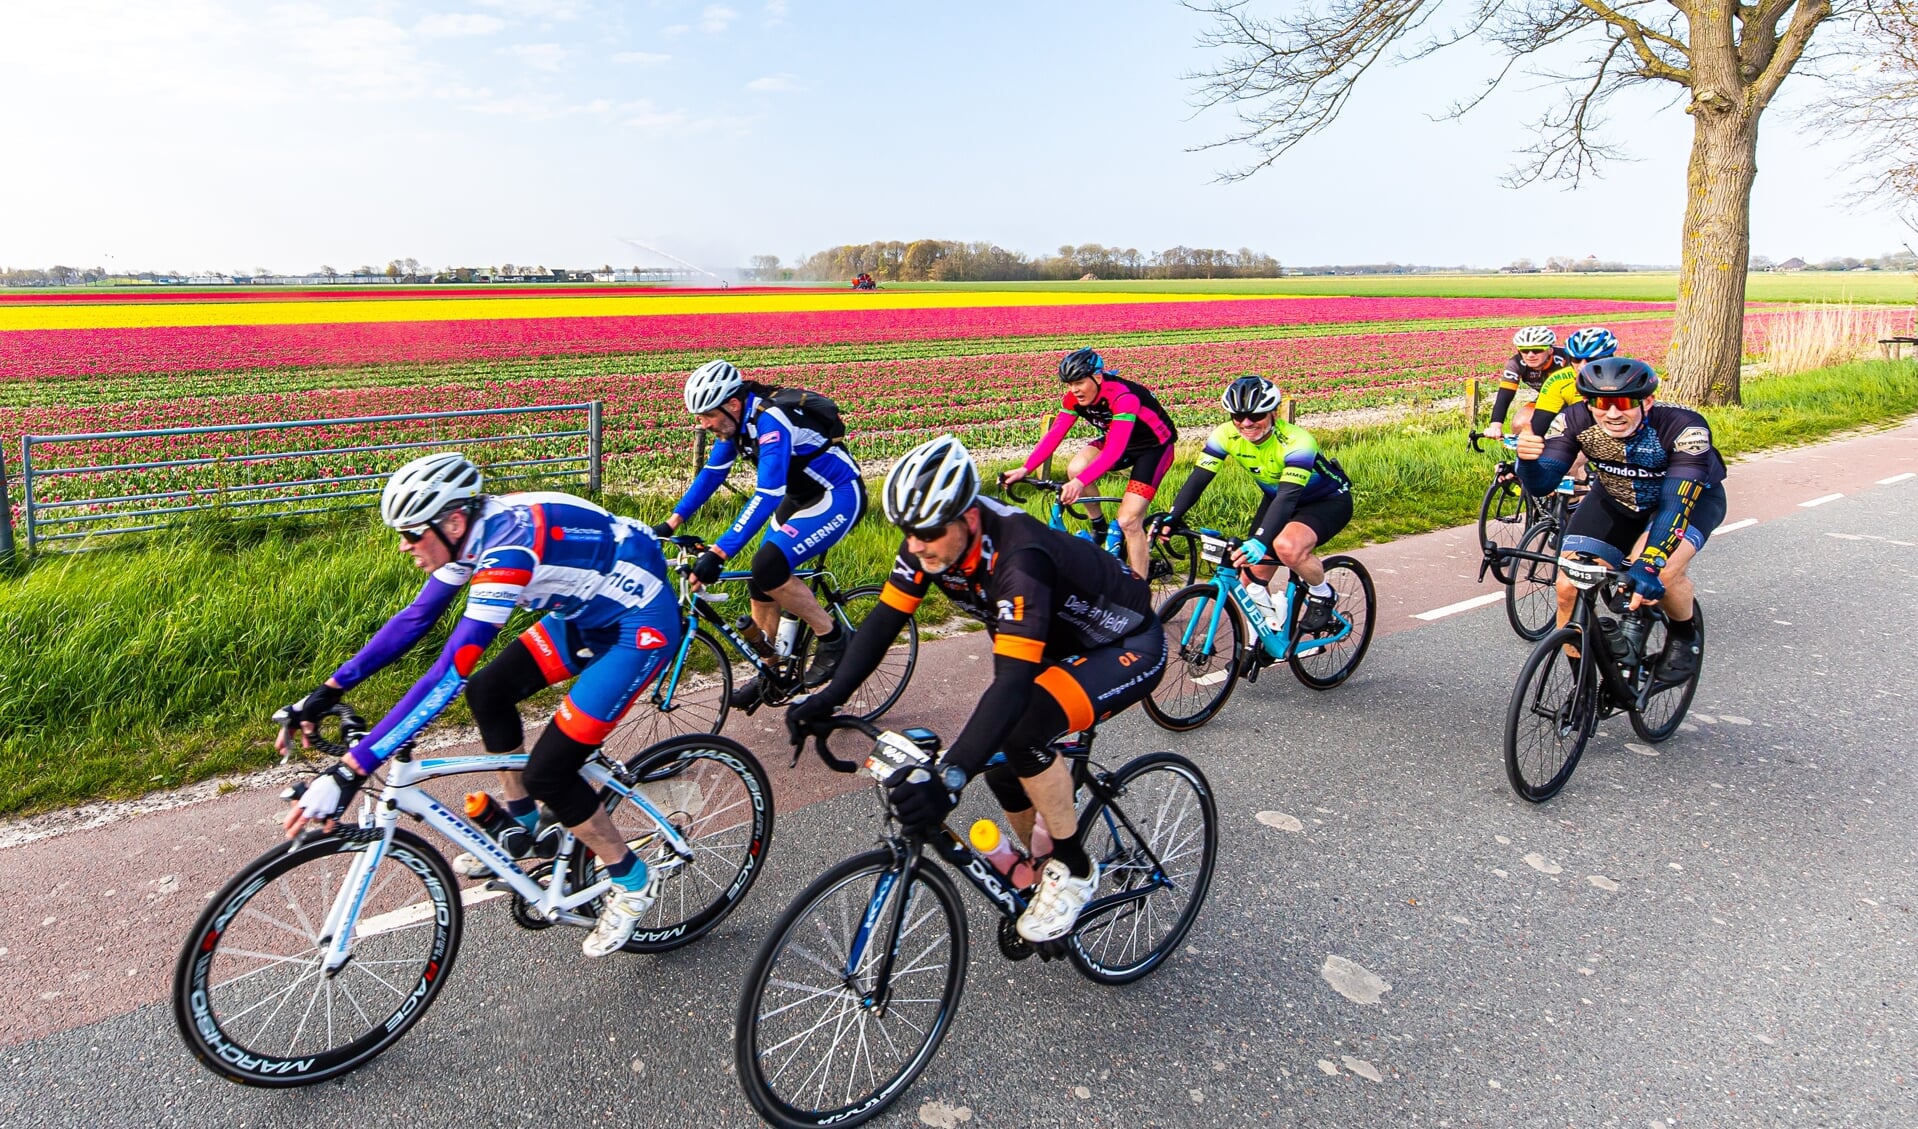 Ronde van Noord-Holland, hier langs een prachtig tulpenveld.